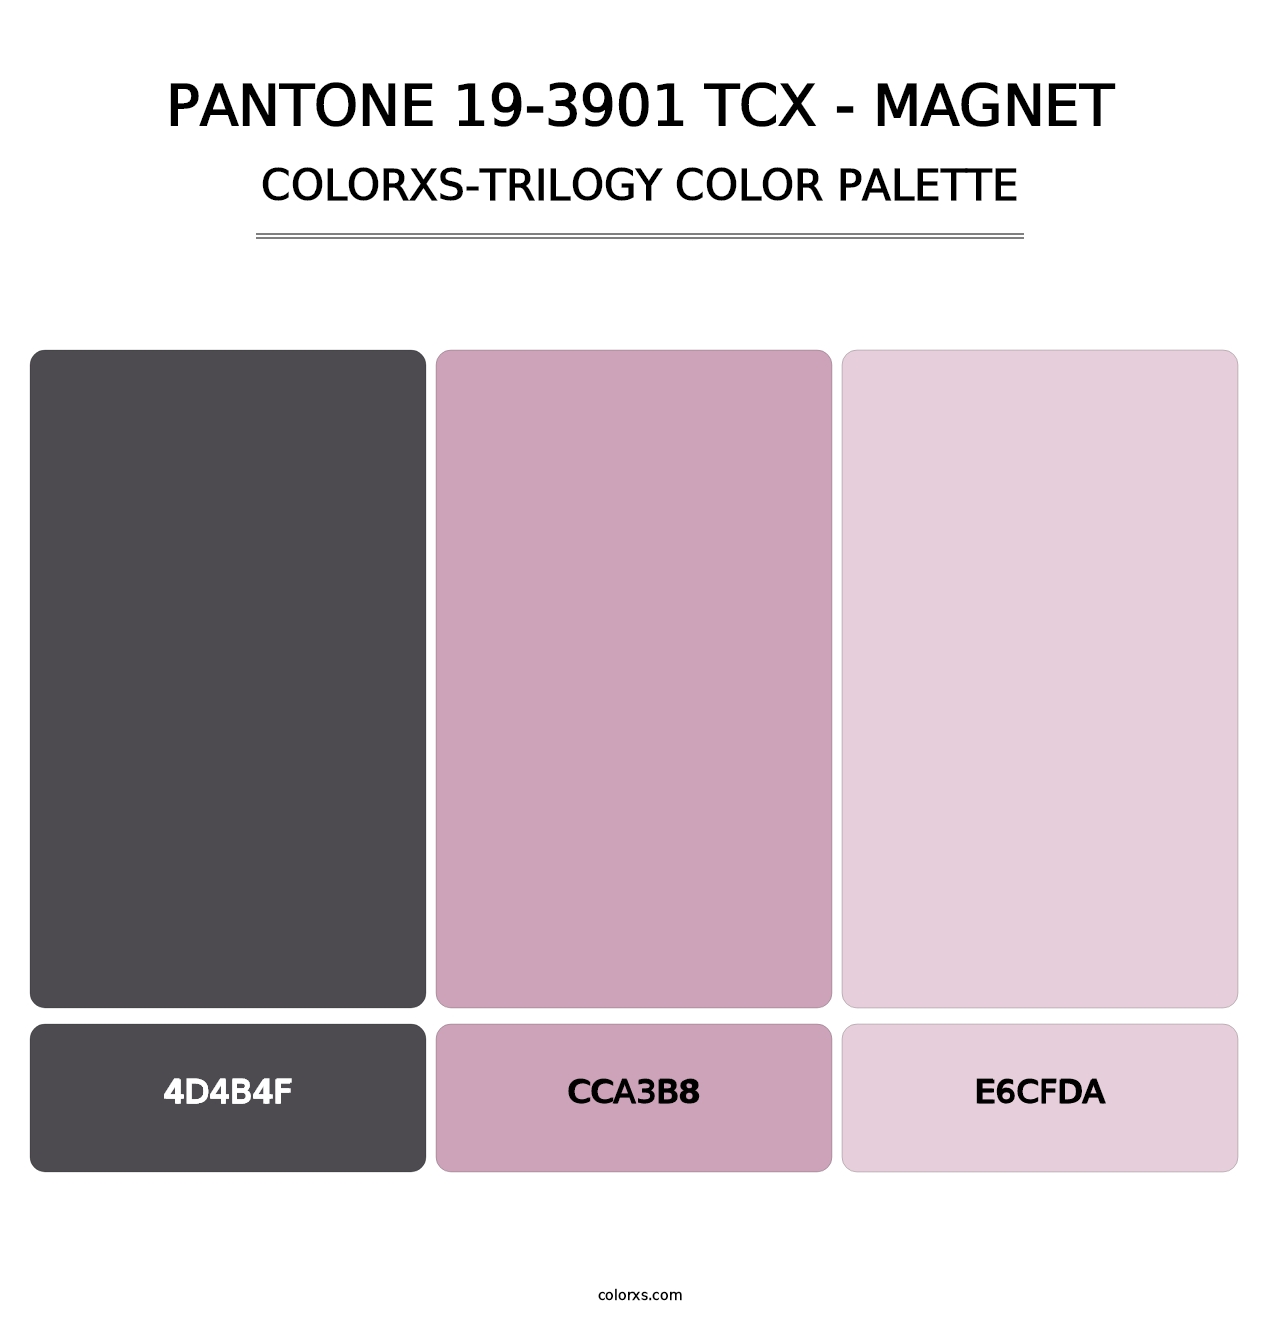 PANTONE 19-3901 TCX - Magnet - Colorxs Trilogy Palette